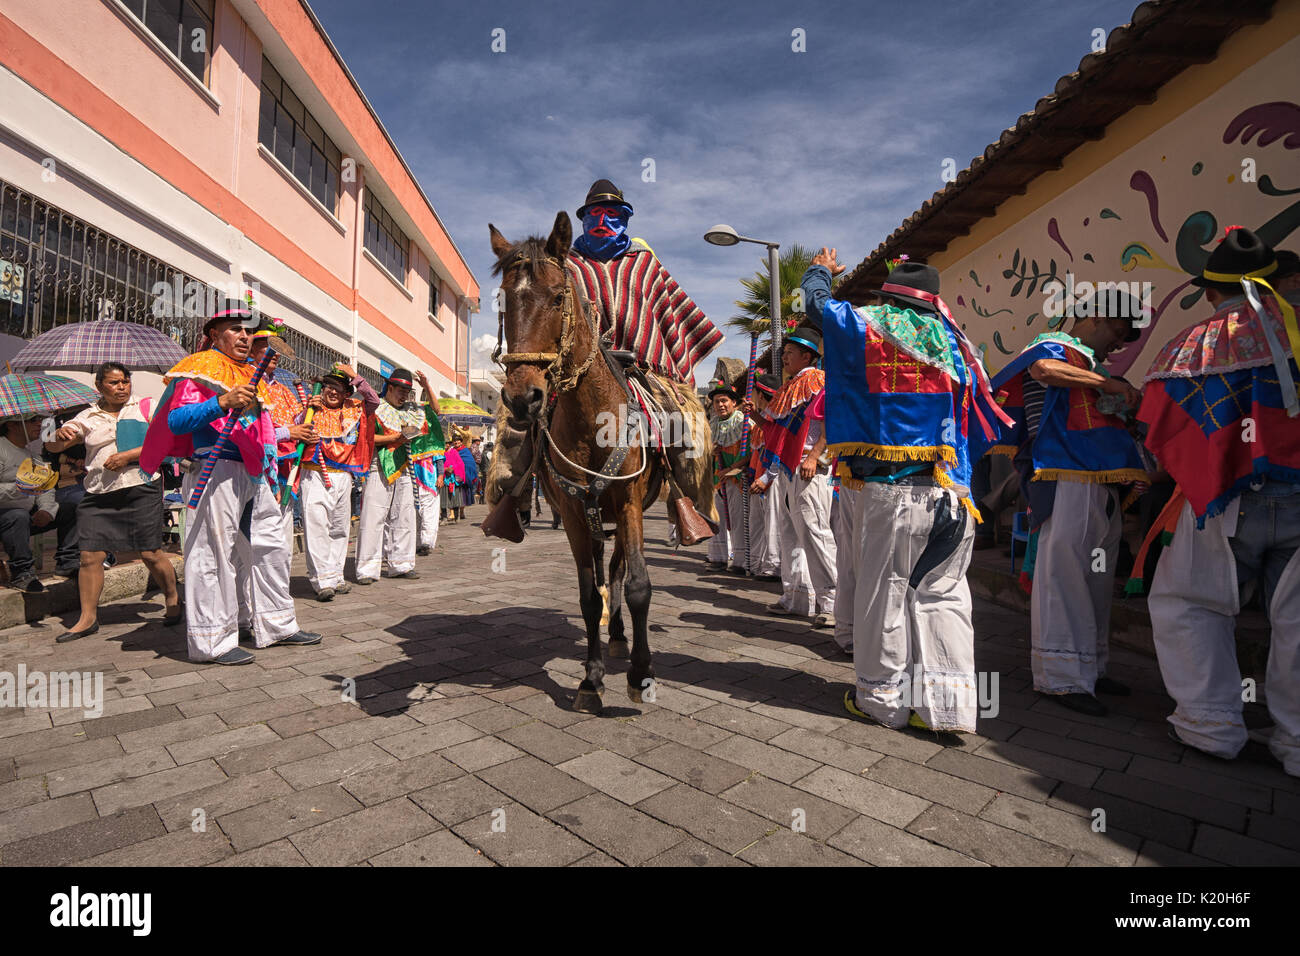 Juni 17, 2017 Pujili, Ecuador: maskierte Reiter und Männer in bunten Kostümen an der Corpus Christi Parade Stockfoto